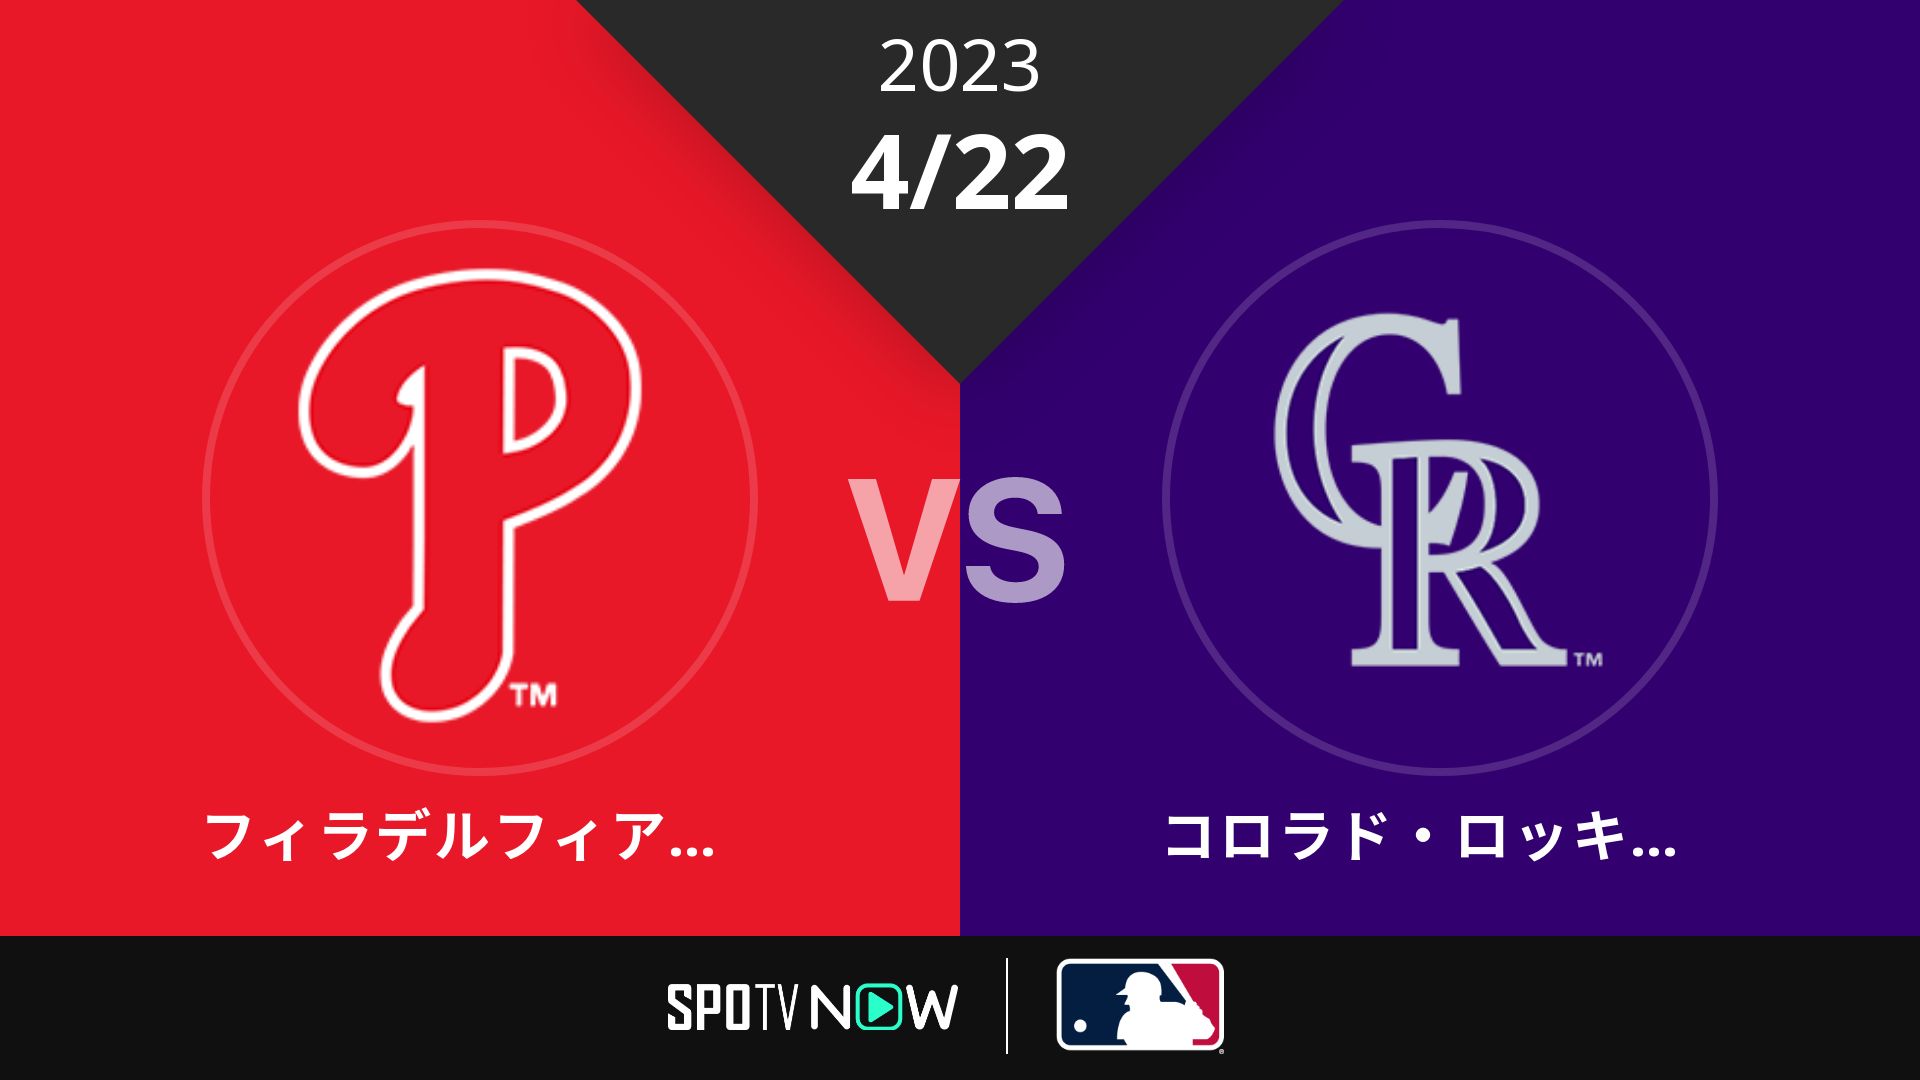 2023/4/22 フィリーズ vs ロッキーズ [MLB]